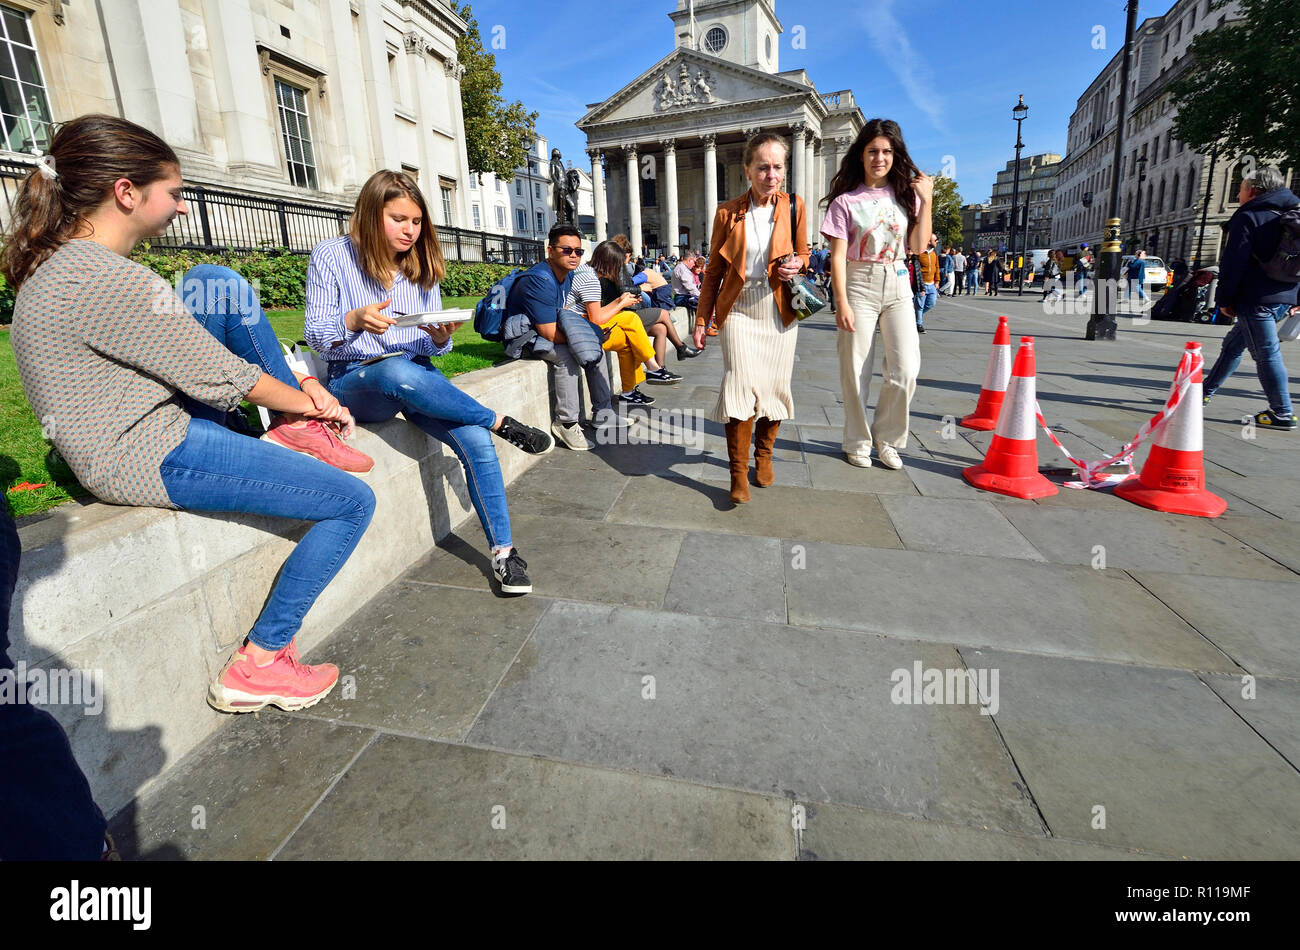 Le persone in un momento di relax a ora di pranzo di fronte alla National Gallery in Trafalgar Square a Londra, Inghilterra, Regno Unito. Foto Stock